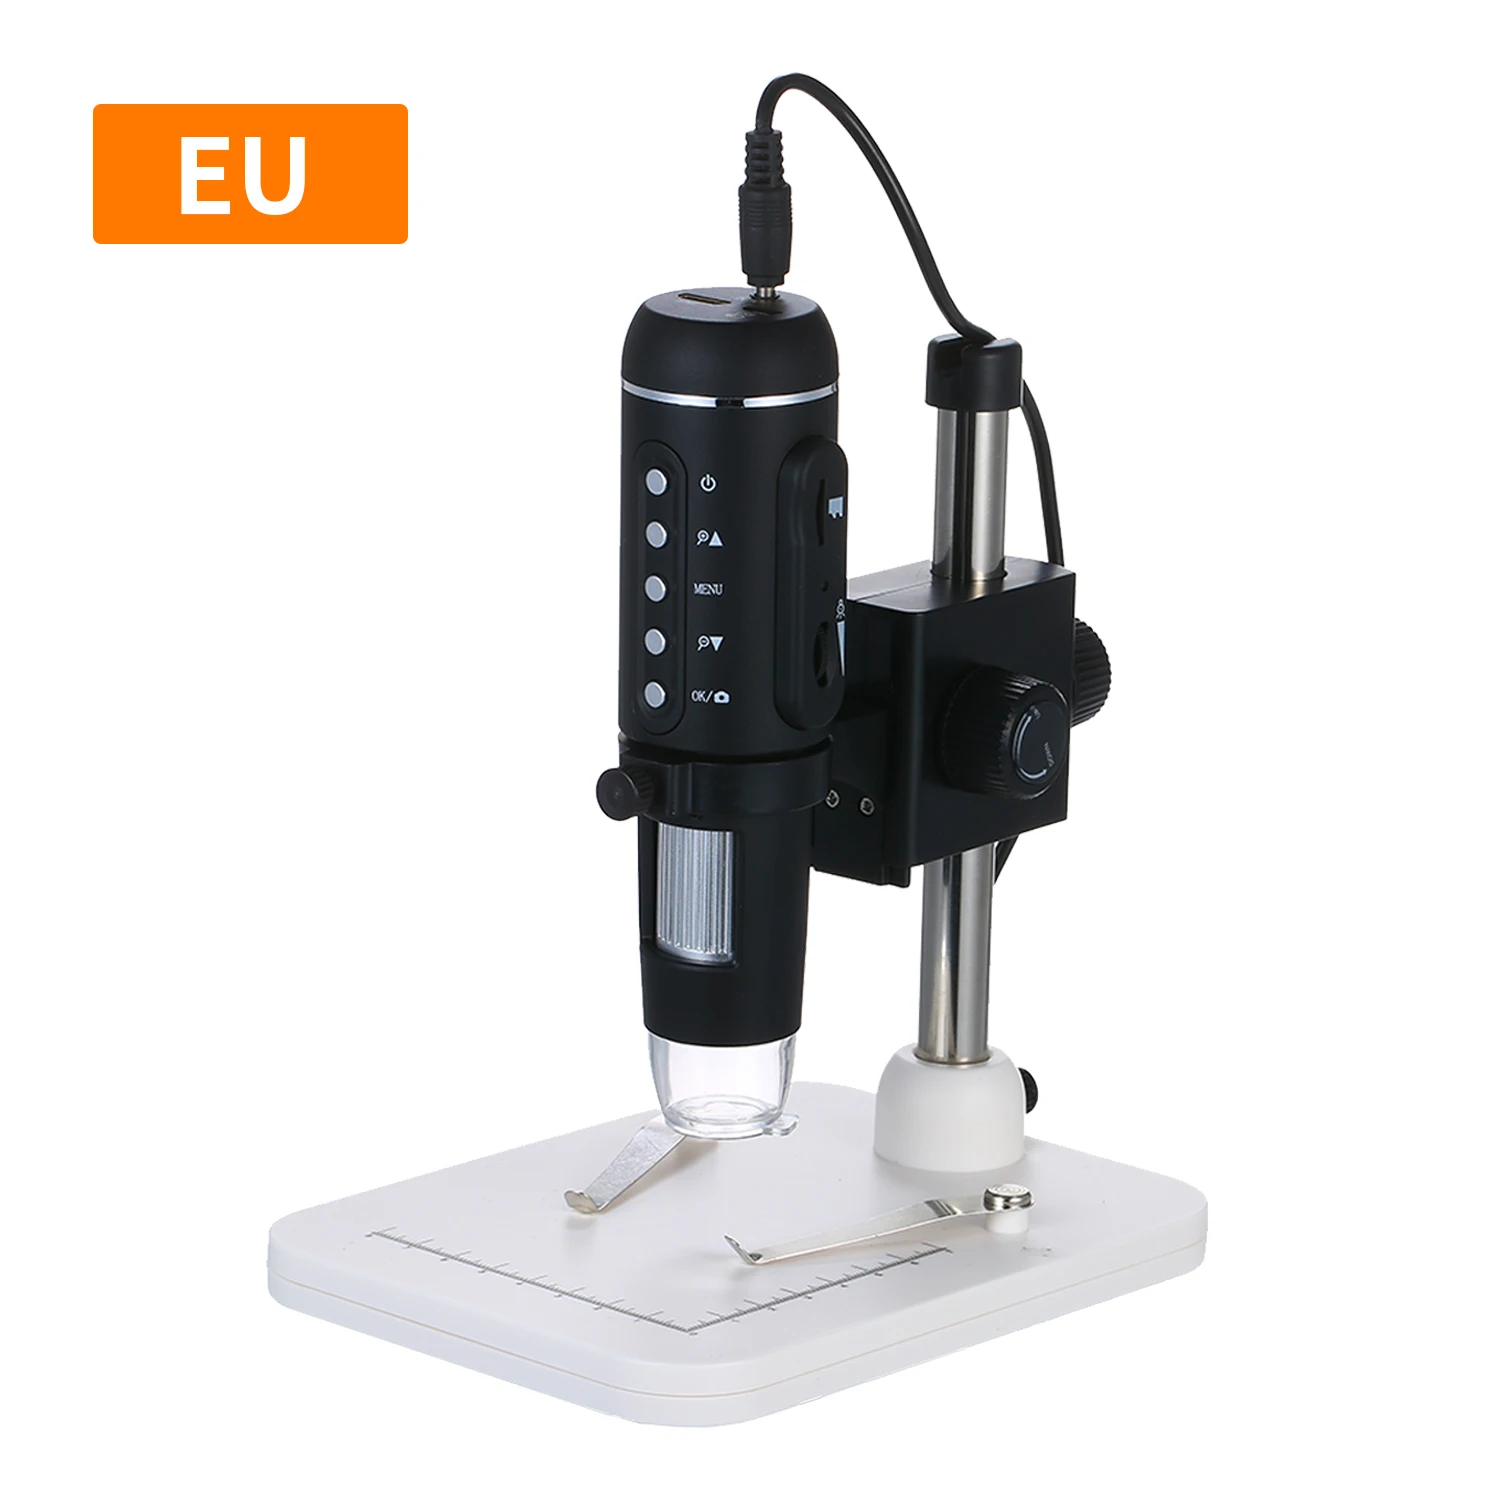 1000X увеличение 5MP камера USB цифровой микроскоп настольная Лупа цифровой зум микроскоп Лупа - Цвет: EU PLUG